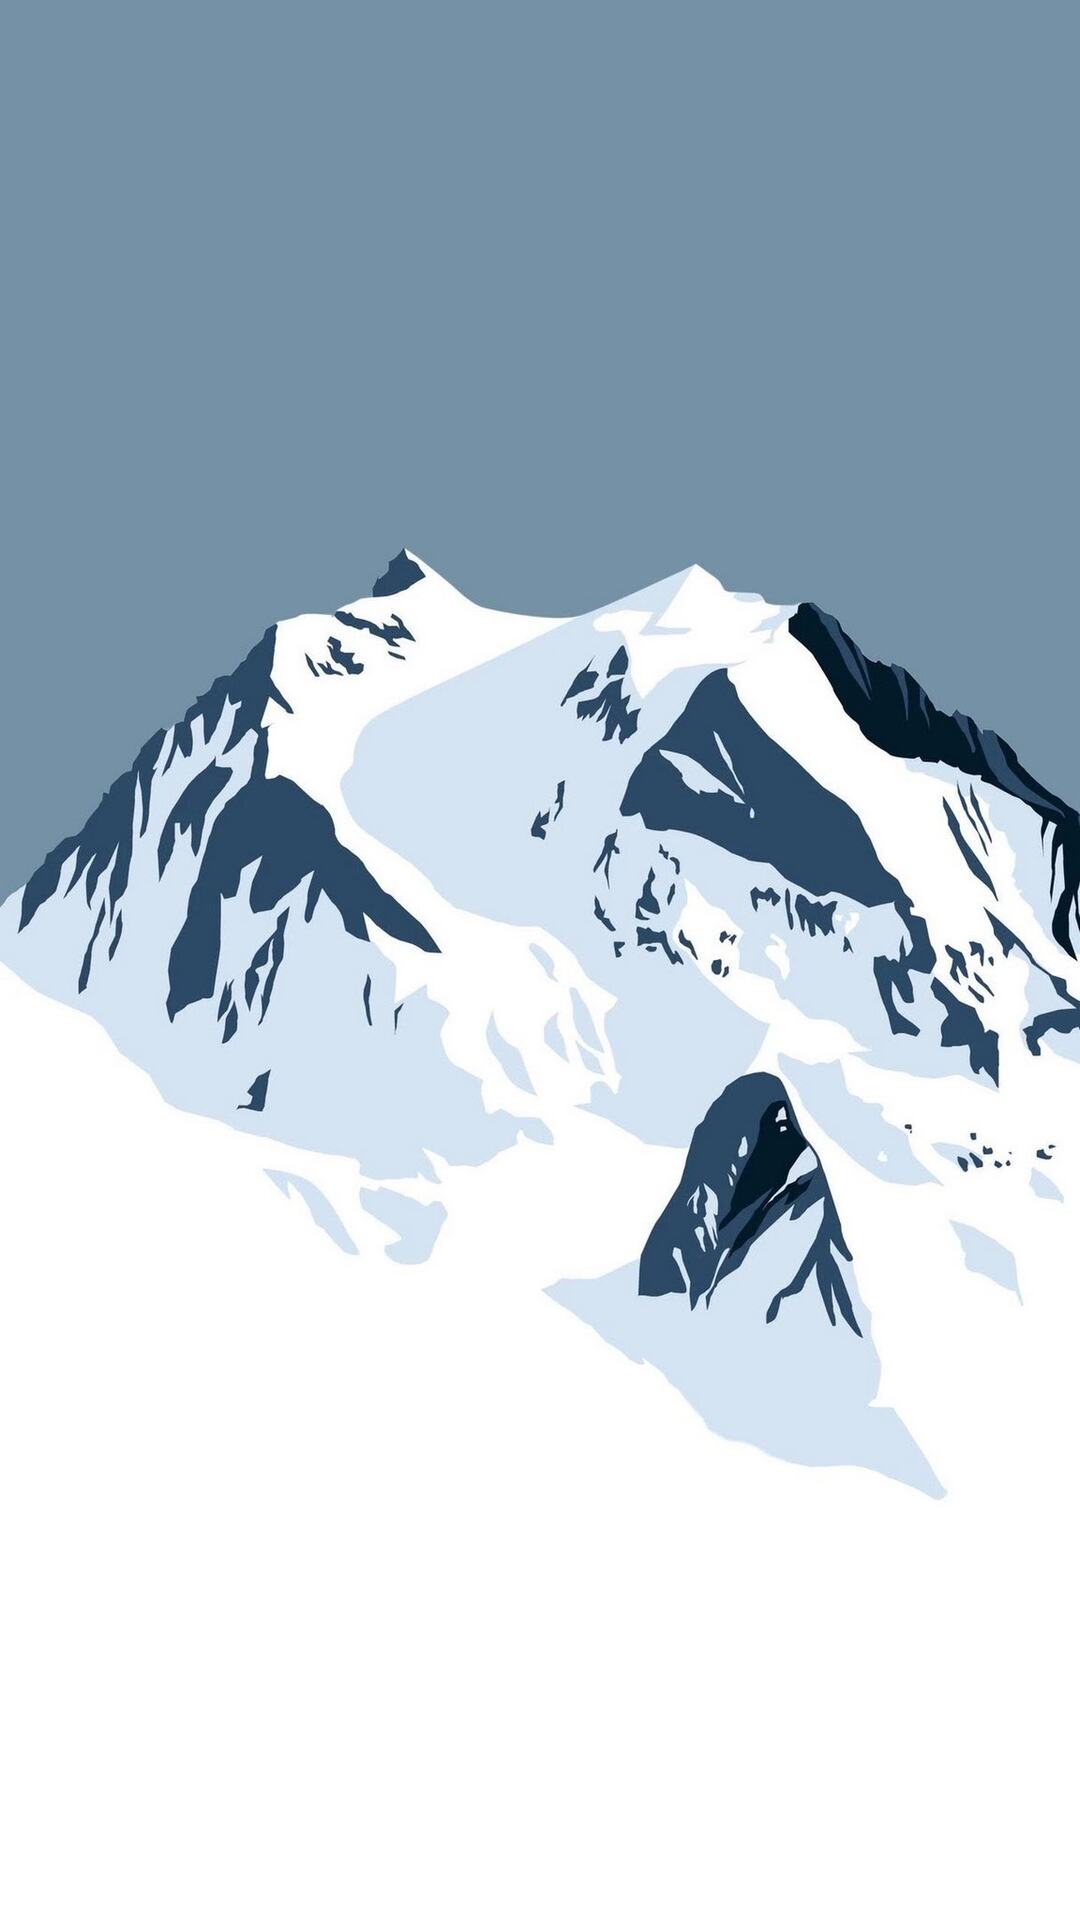 卡通手绘的雪山风景手机壁纸，好特别套图1